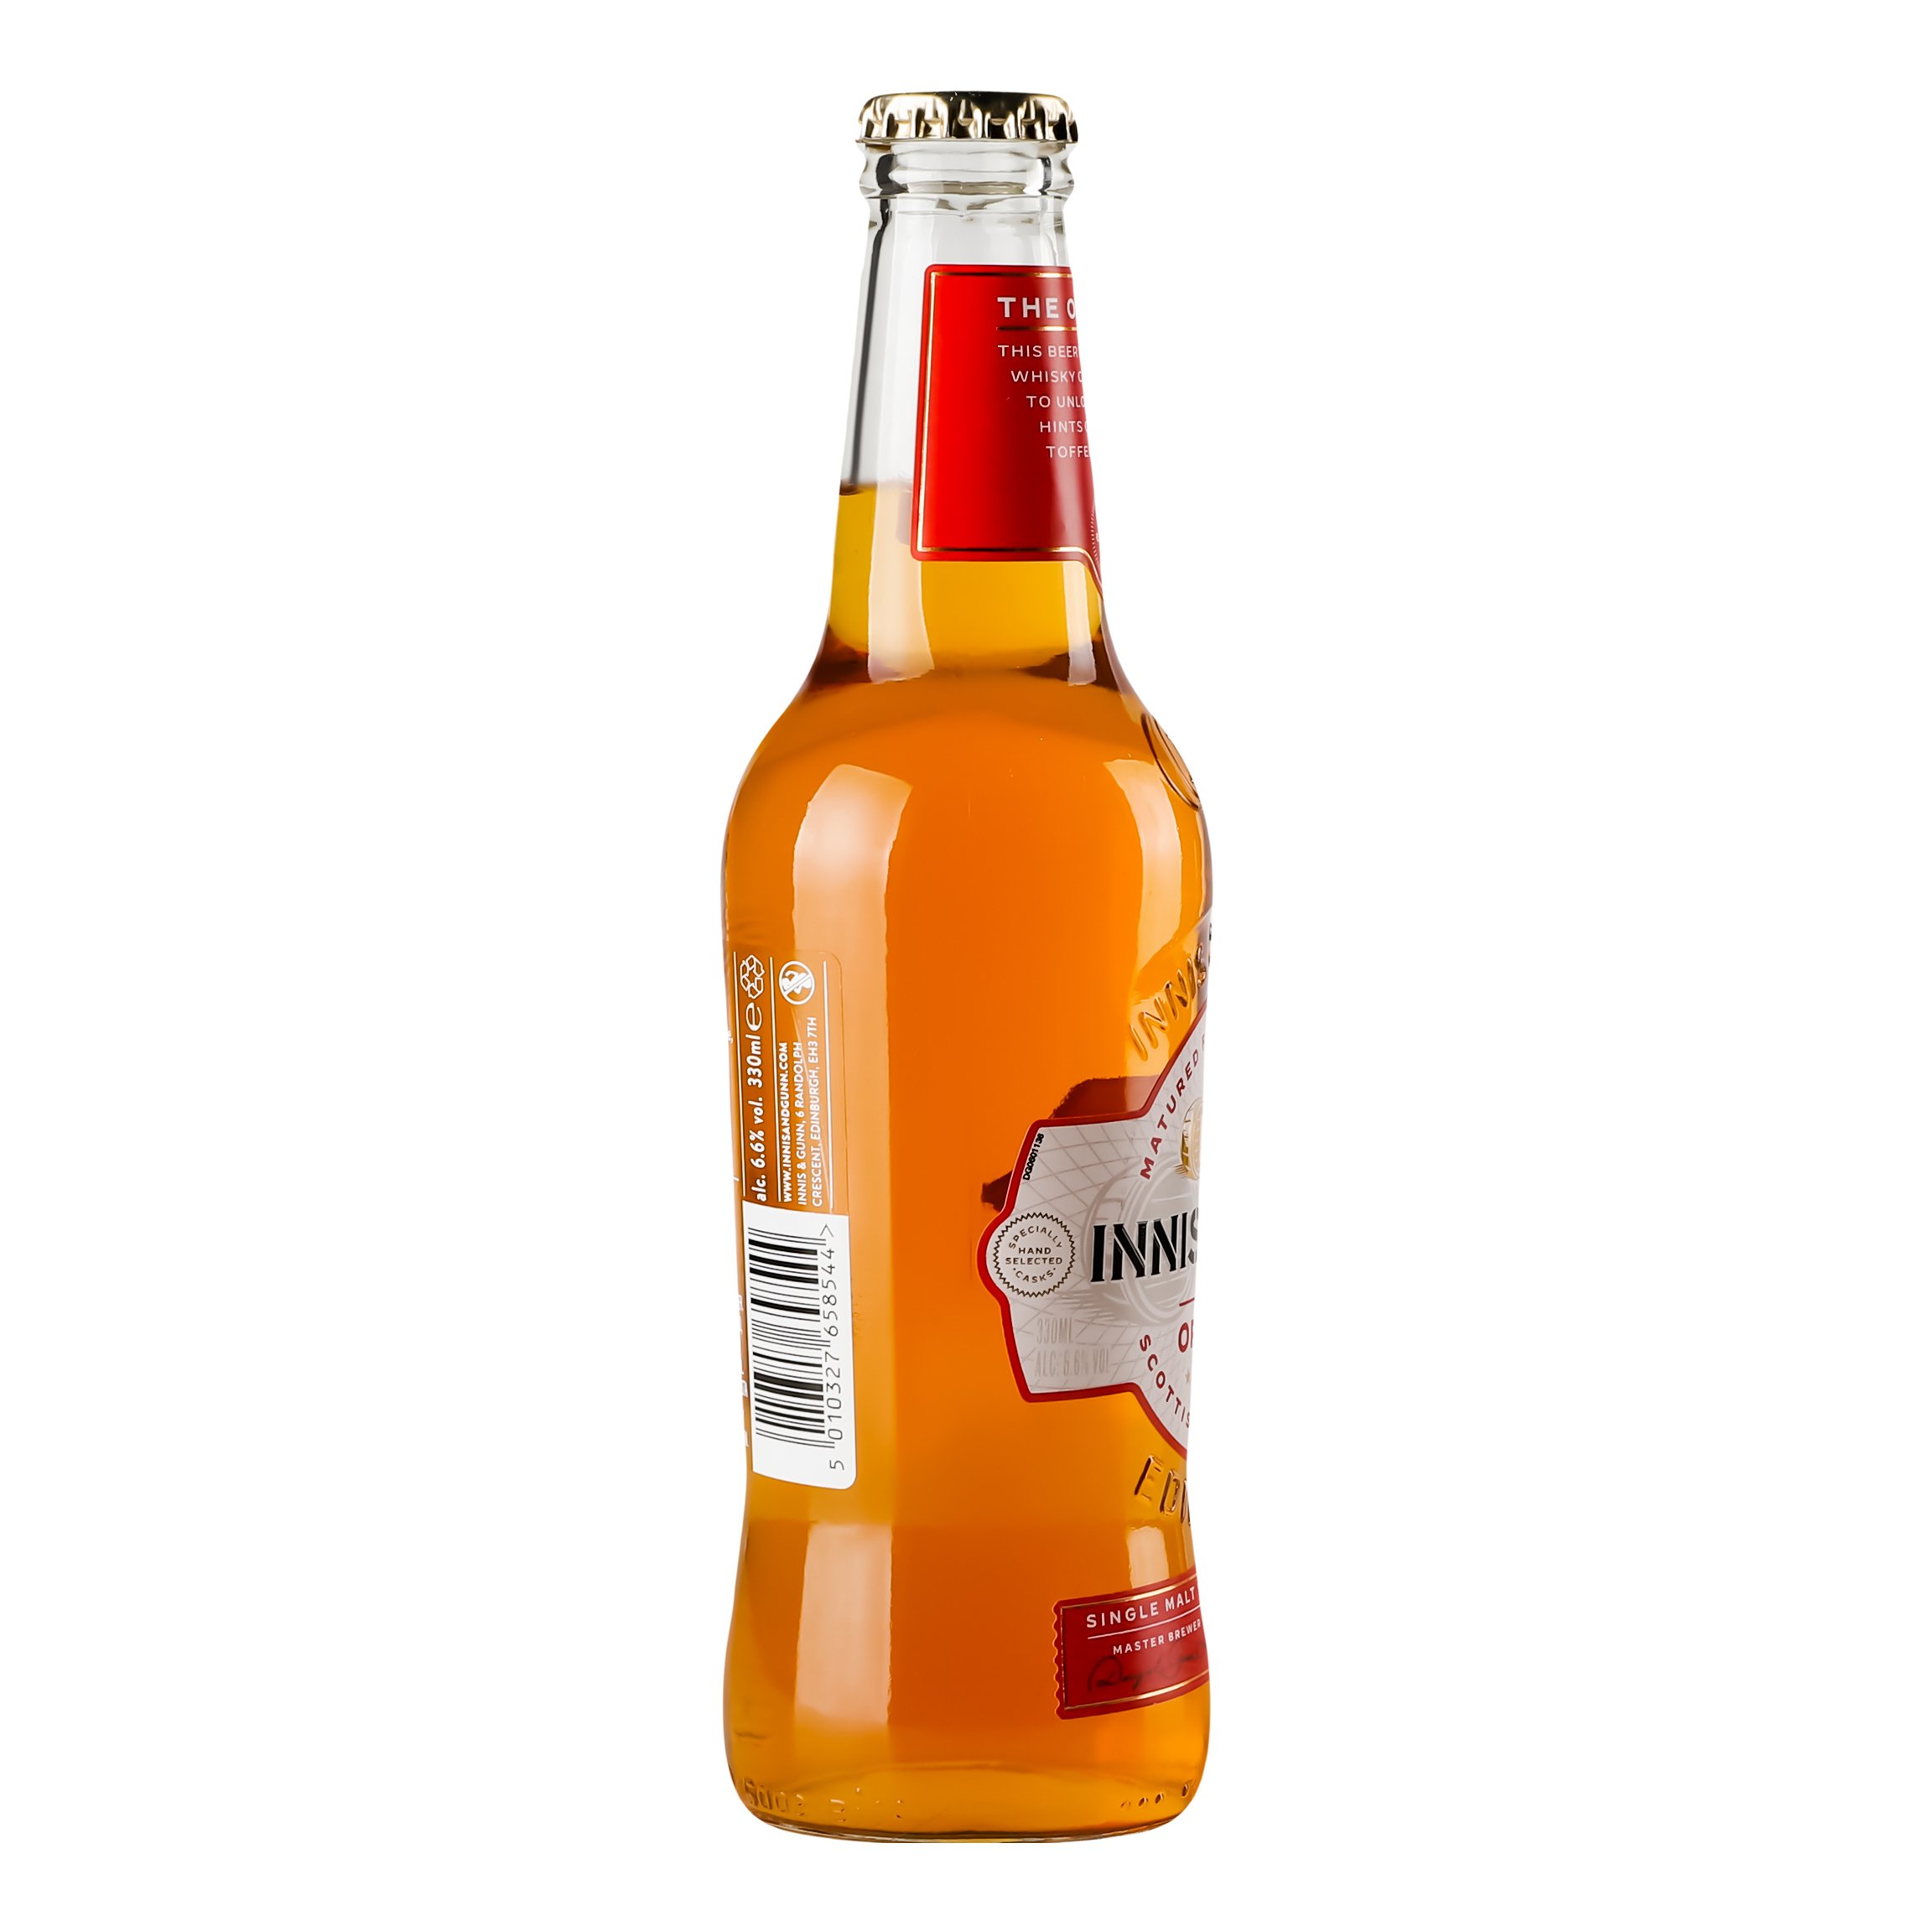 Пиво Innis&Gunn Original янтарное фильтрованное, 6,6%, 0,33 л (577454) - фото 2